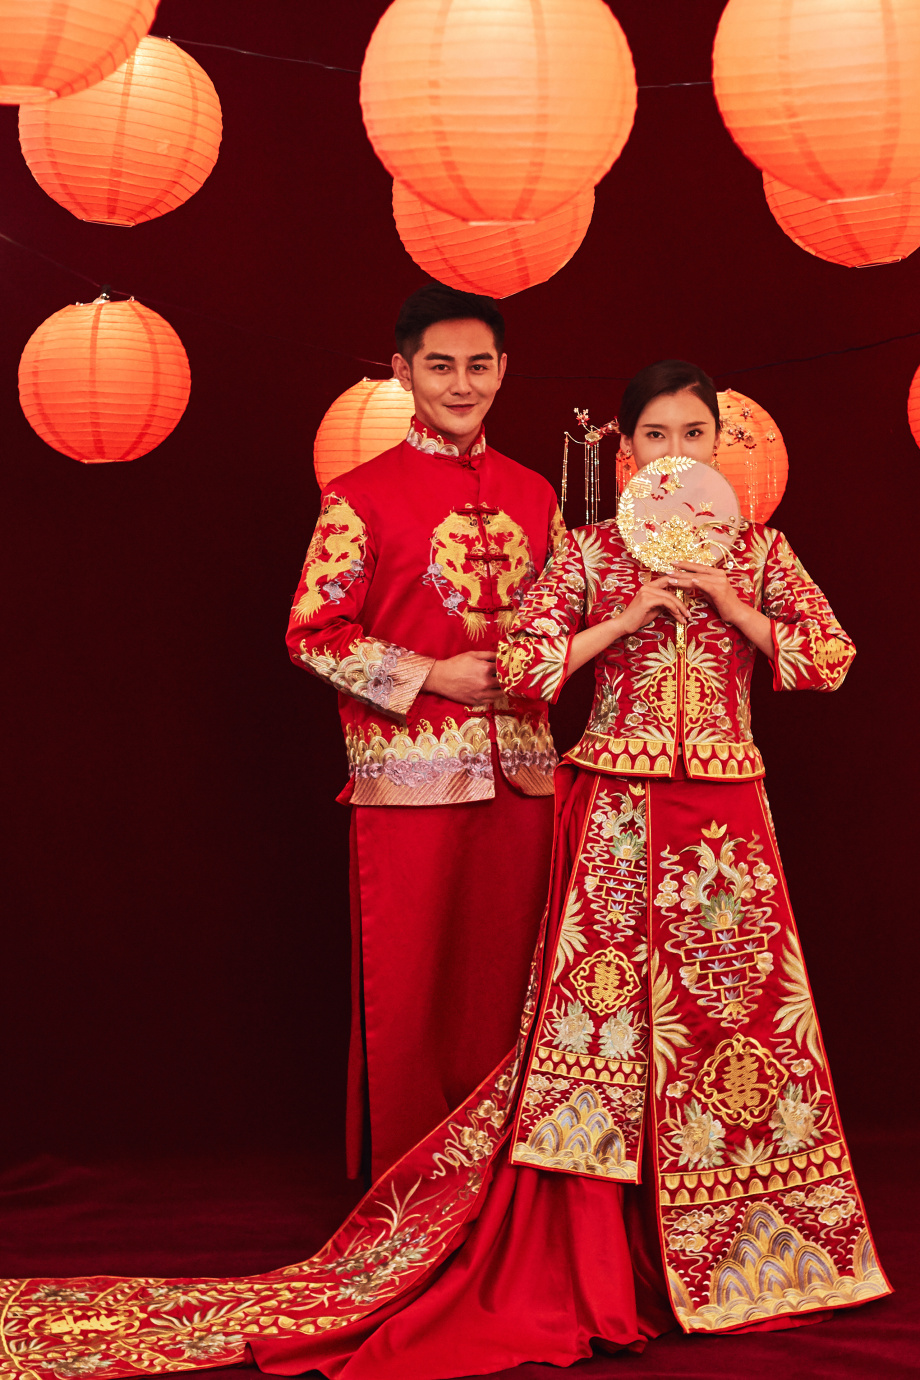 Bạn muốn có một bộ ảnh cưới đẹp và ấn tượng? Hãy cùng thử làm một bộ ảnh cưới phong cách Trung Quốc. Áo dài cách tân, hoa sen, tùng thiềm, ... sẽ giúp cho bộ ảnh của bạn trở nên hoàn thiện và độc đáo hơn bao giờ hết.